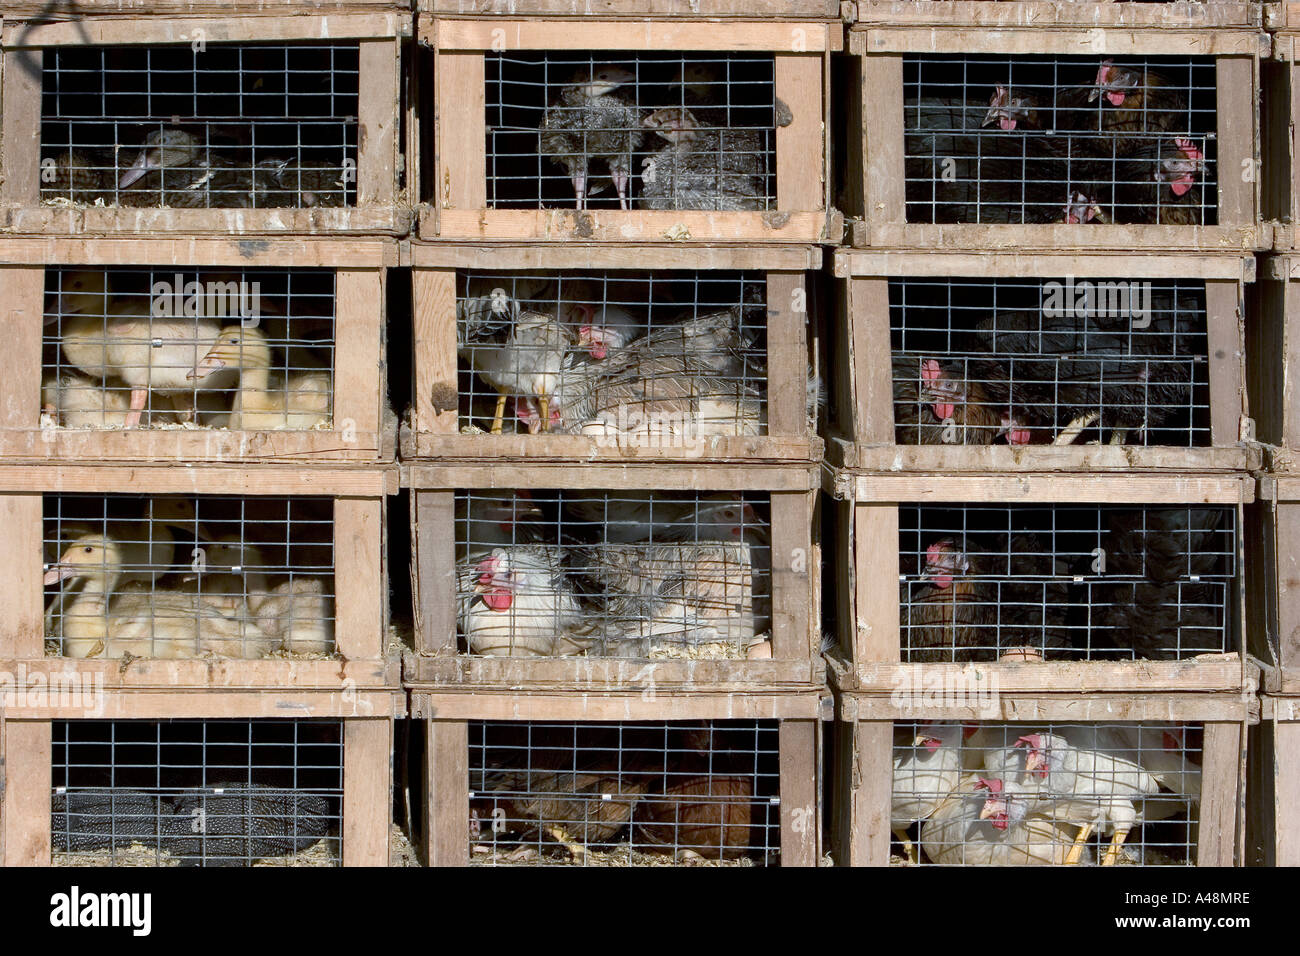 Poultry in cages / Geflügel in Kaefigen Stock Photo